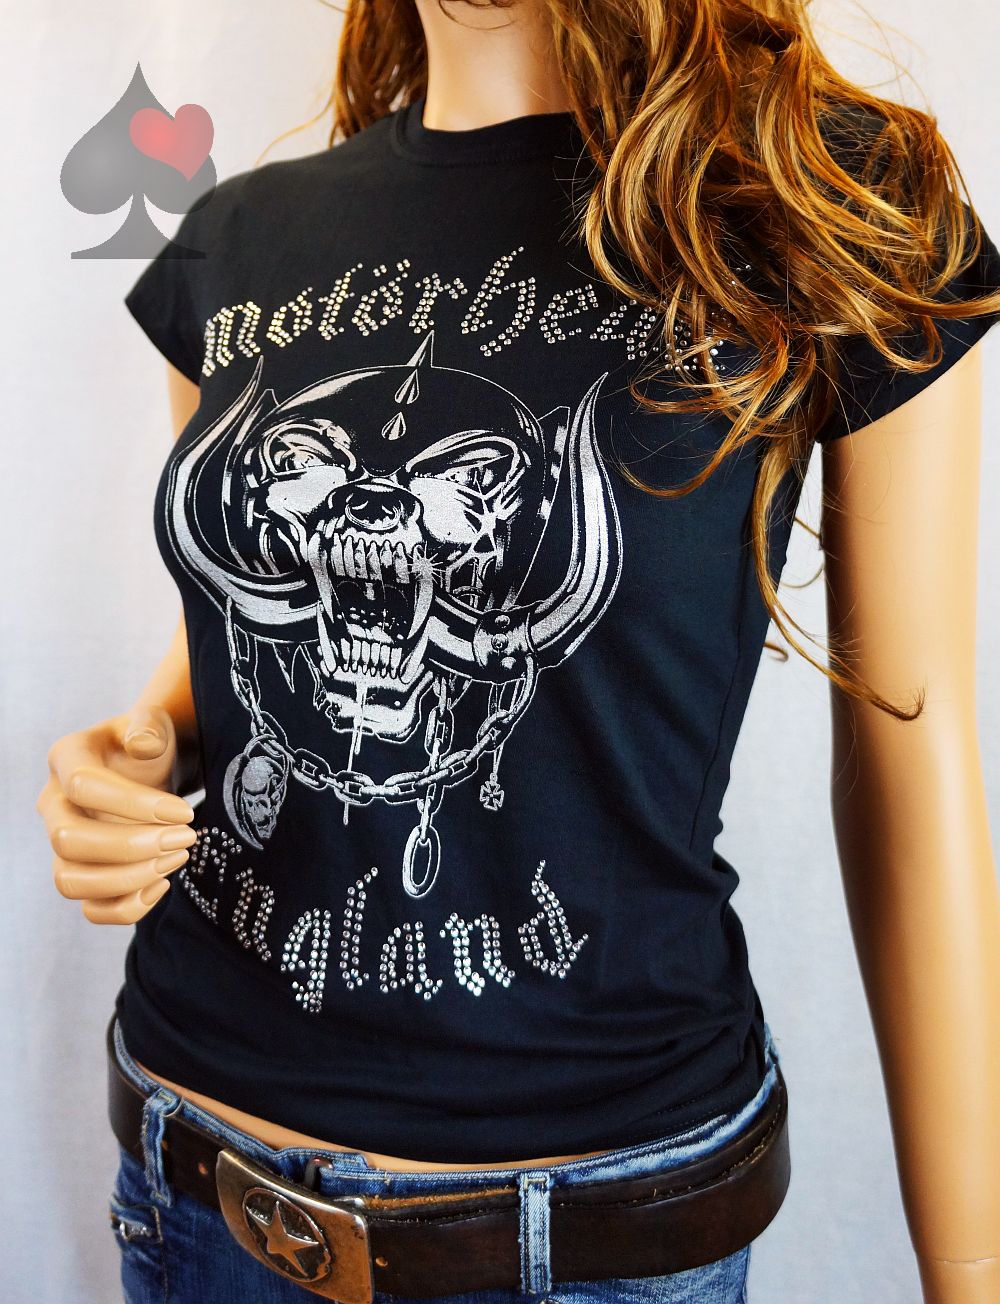 spielerspelunke an der Leuchtenburg - Motörhead Warpig in Strass Ladies T- Shirt Merchandise